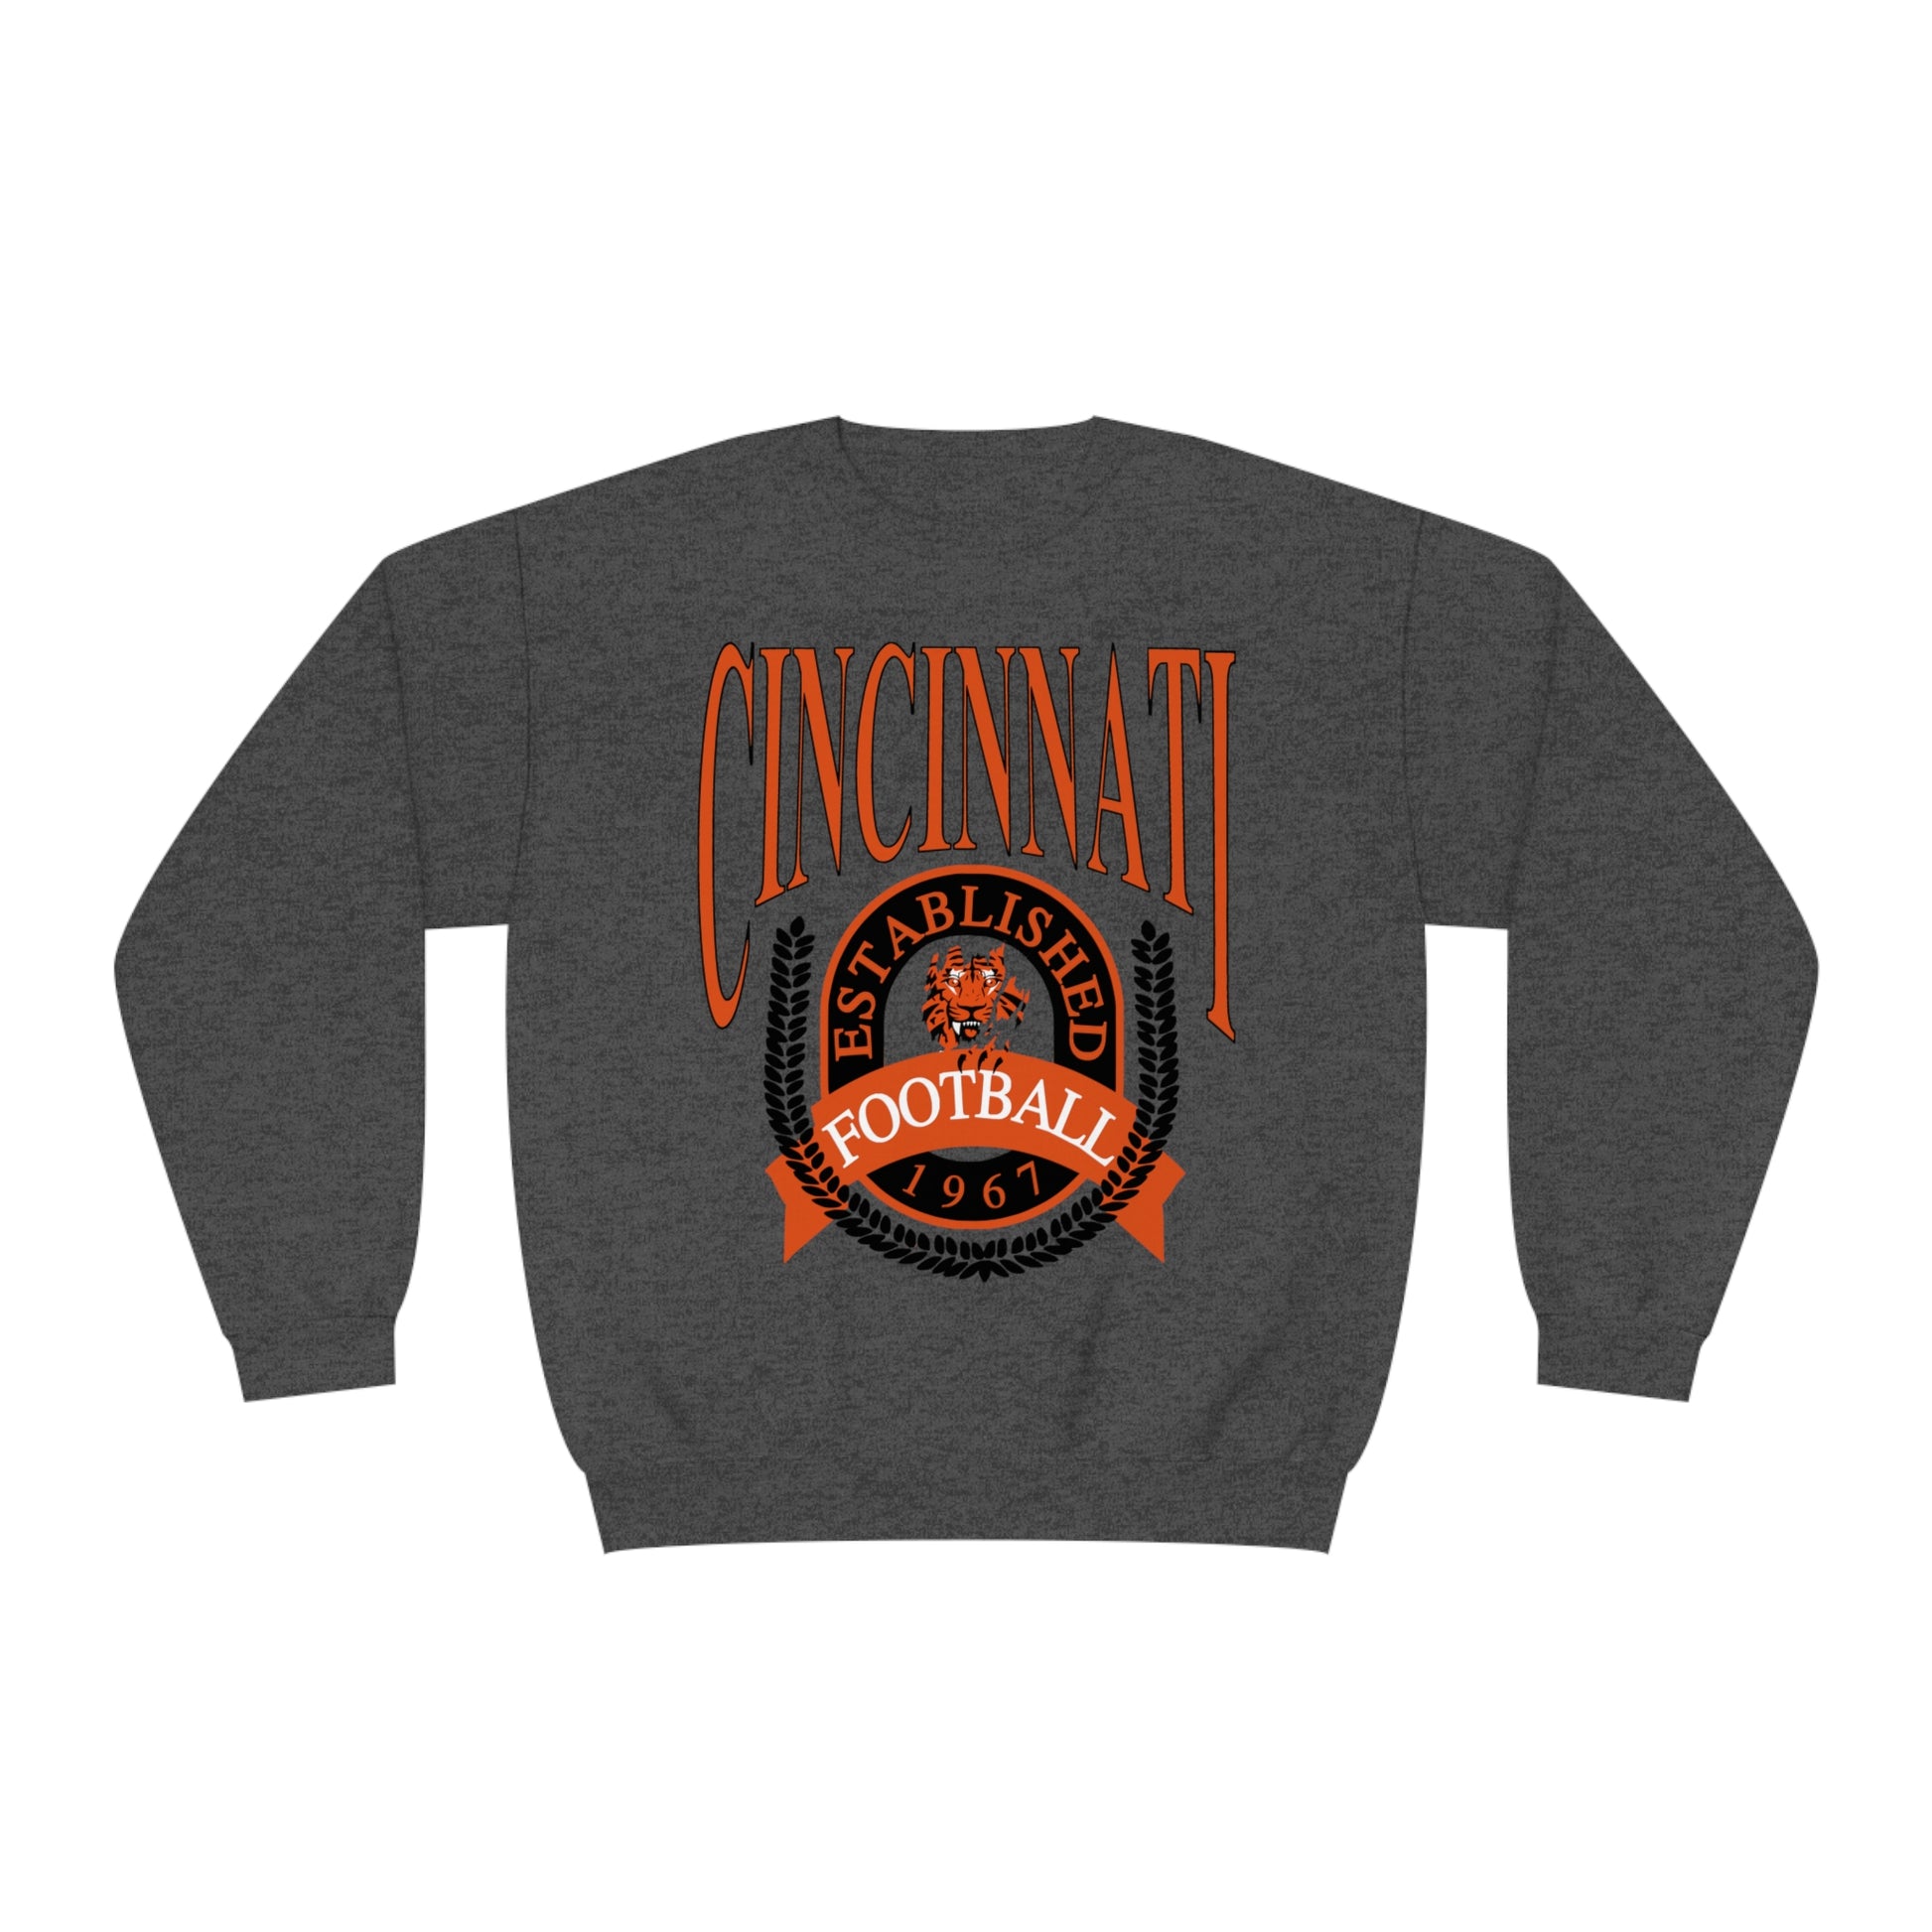 Cincinnati Bengals Crewneck Sweatshirt - Vintage NFL Football Bengals Joe Burrow Hoodie Sweatshirt - Men's & Women's 90's Oversized Hoodie - Design 1